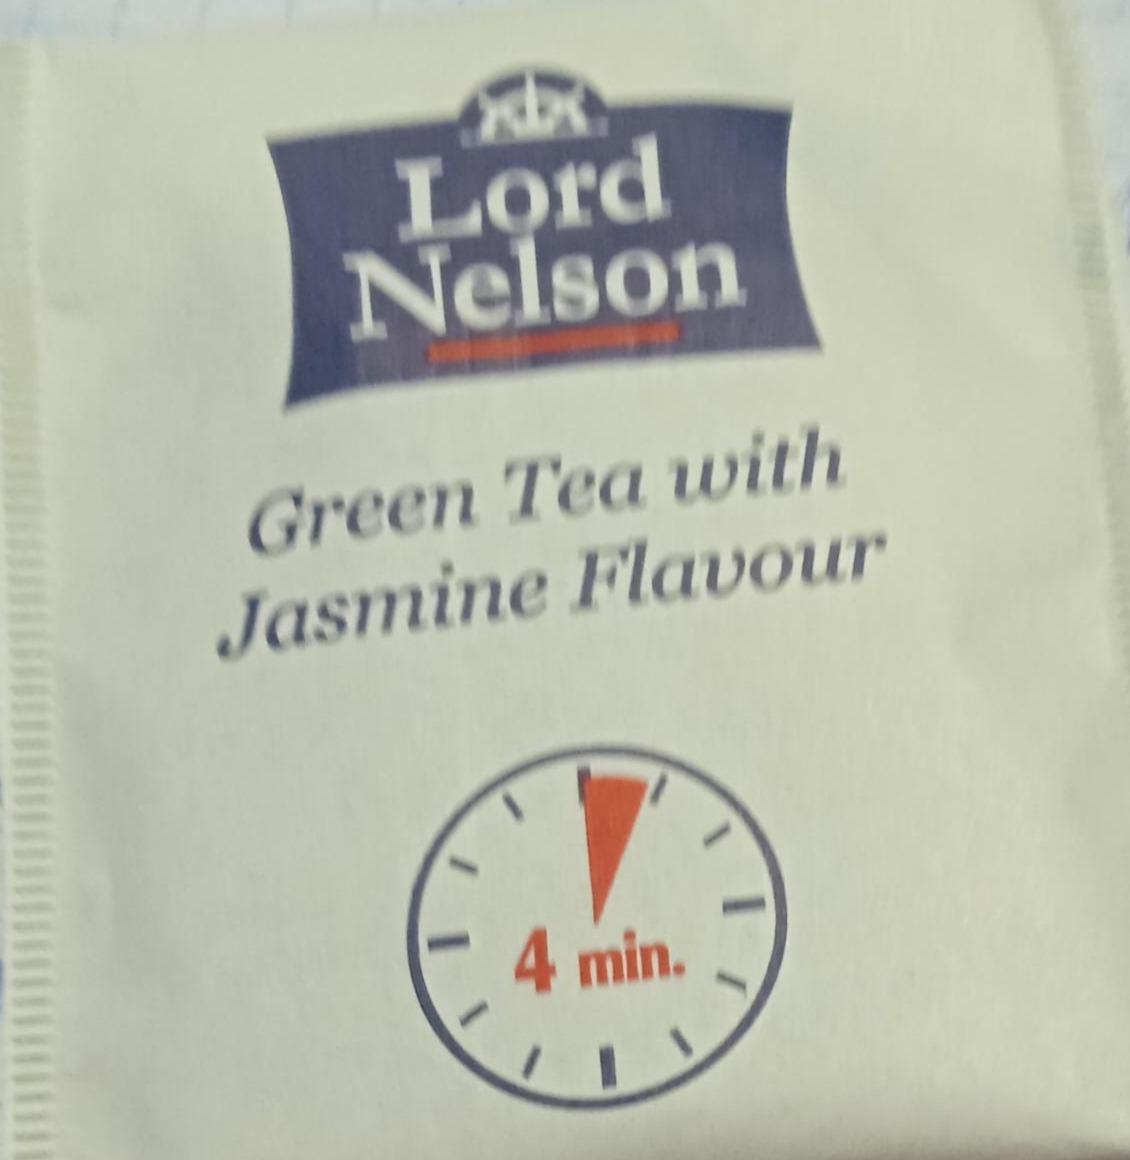 Zdjęcia - Green Tea with Jasmine Flavour Lord Nelson